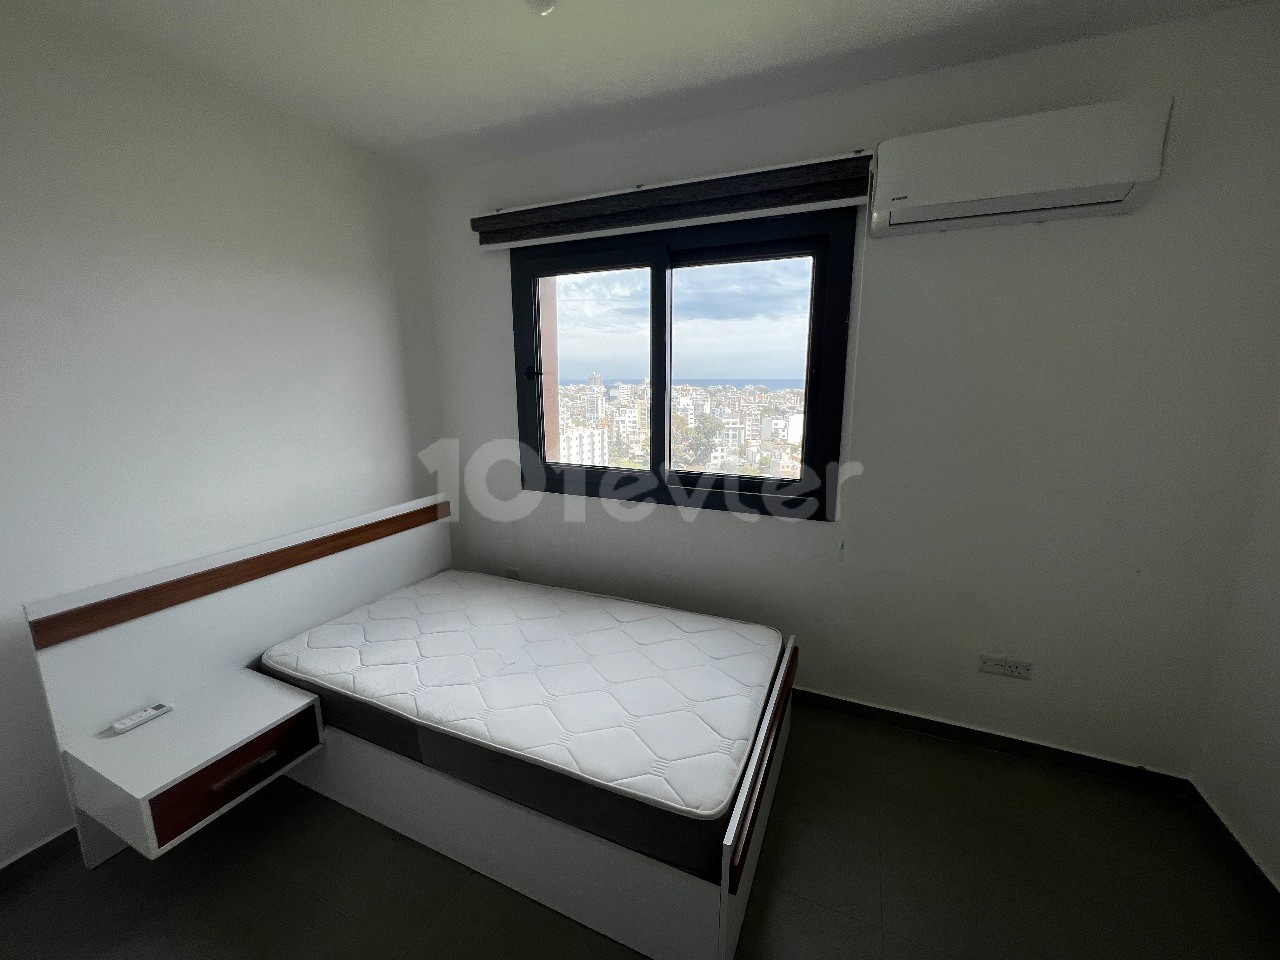 آپارتمان مجلل 2+1 برای اجاره در مرکز ماگوسا با دید کامل دریا